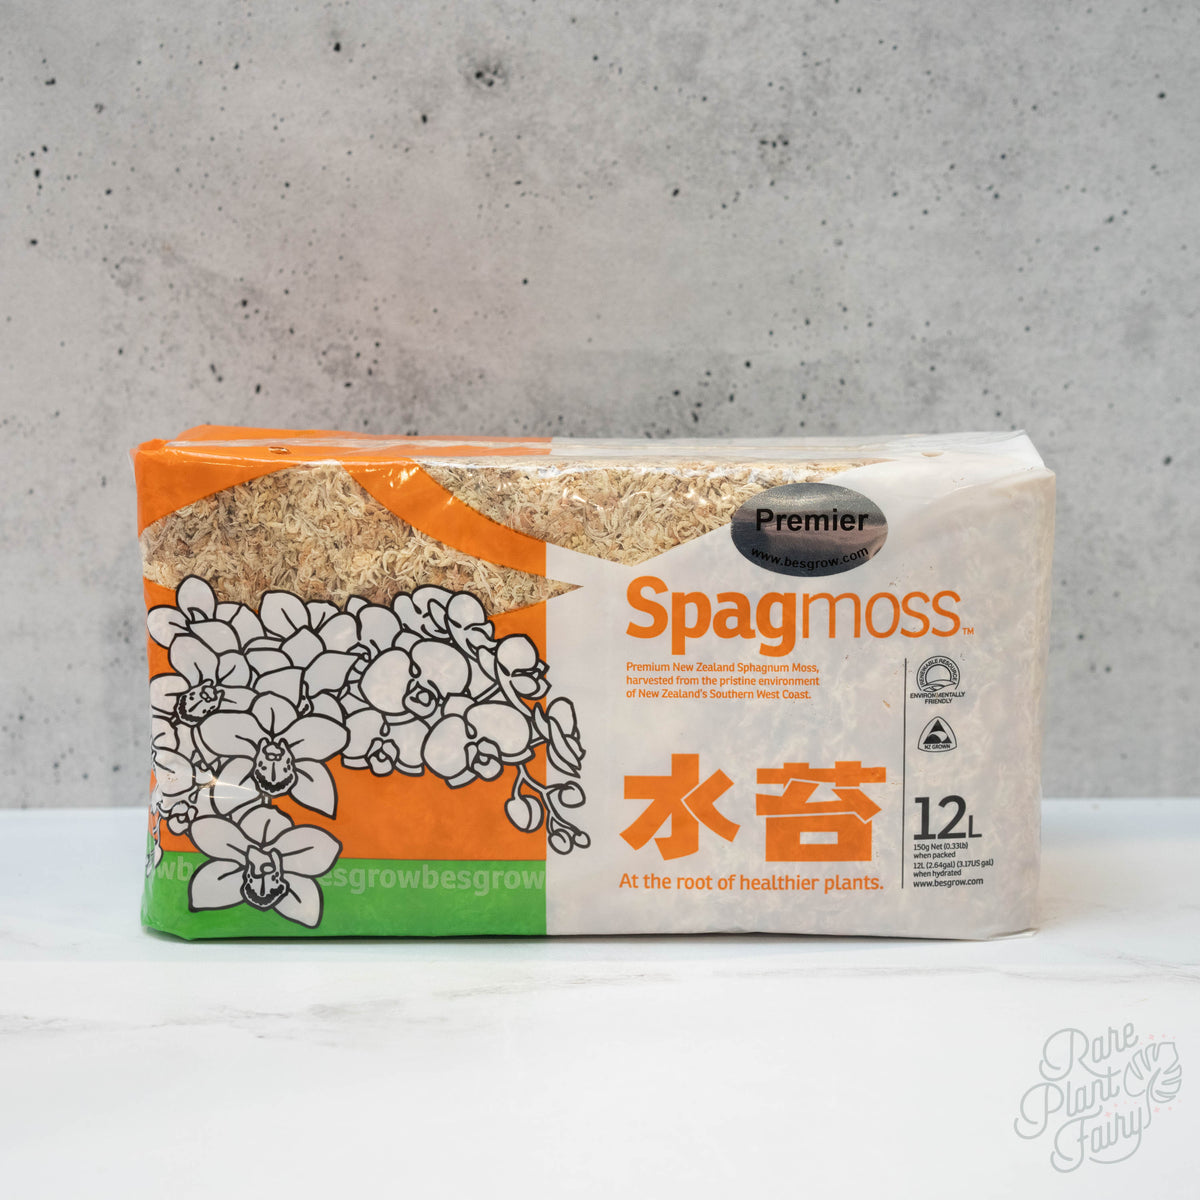 Besgrow Spagmoss 150g Premier New Zealand Sphagnum Moss – Rare